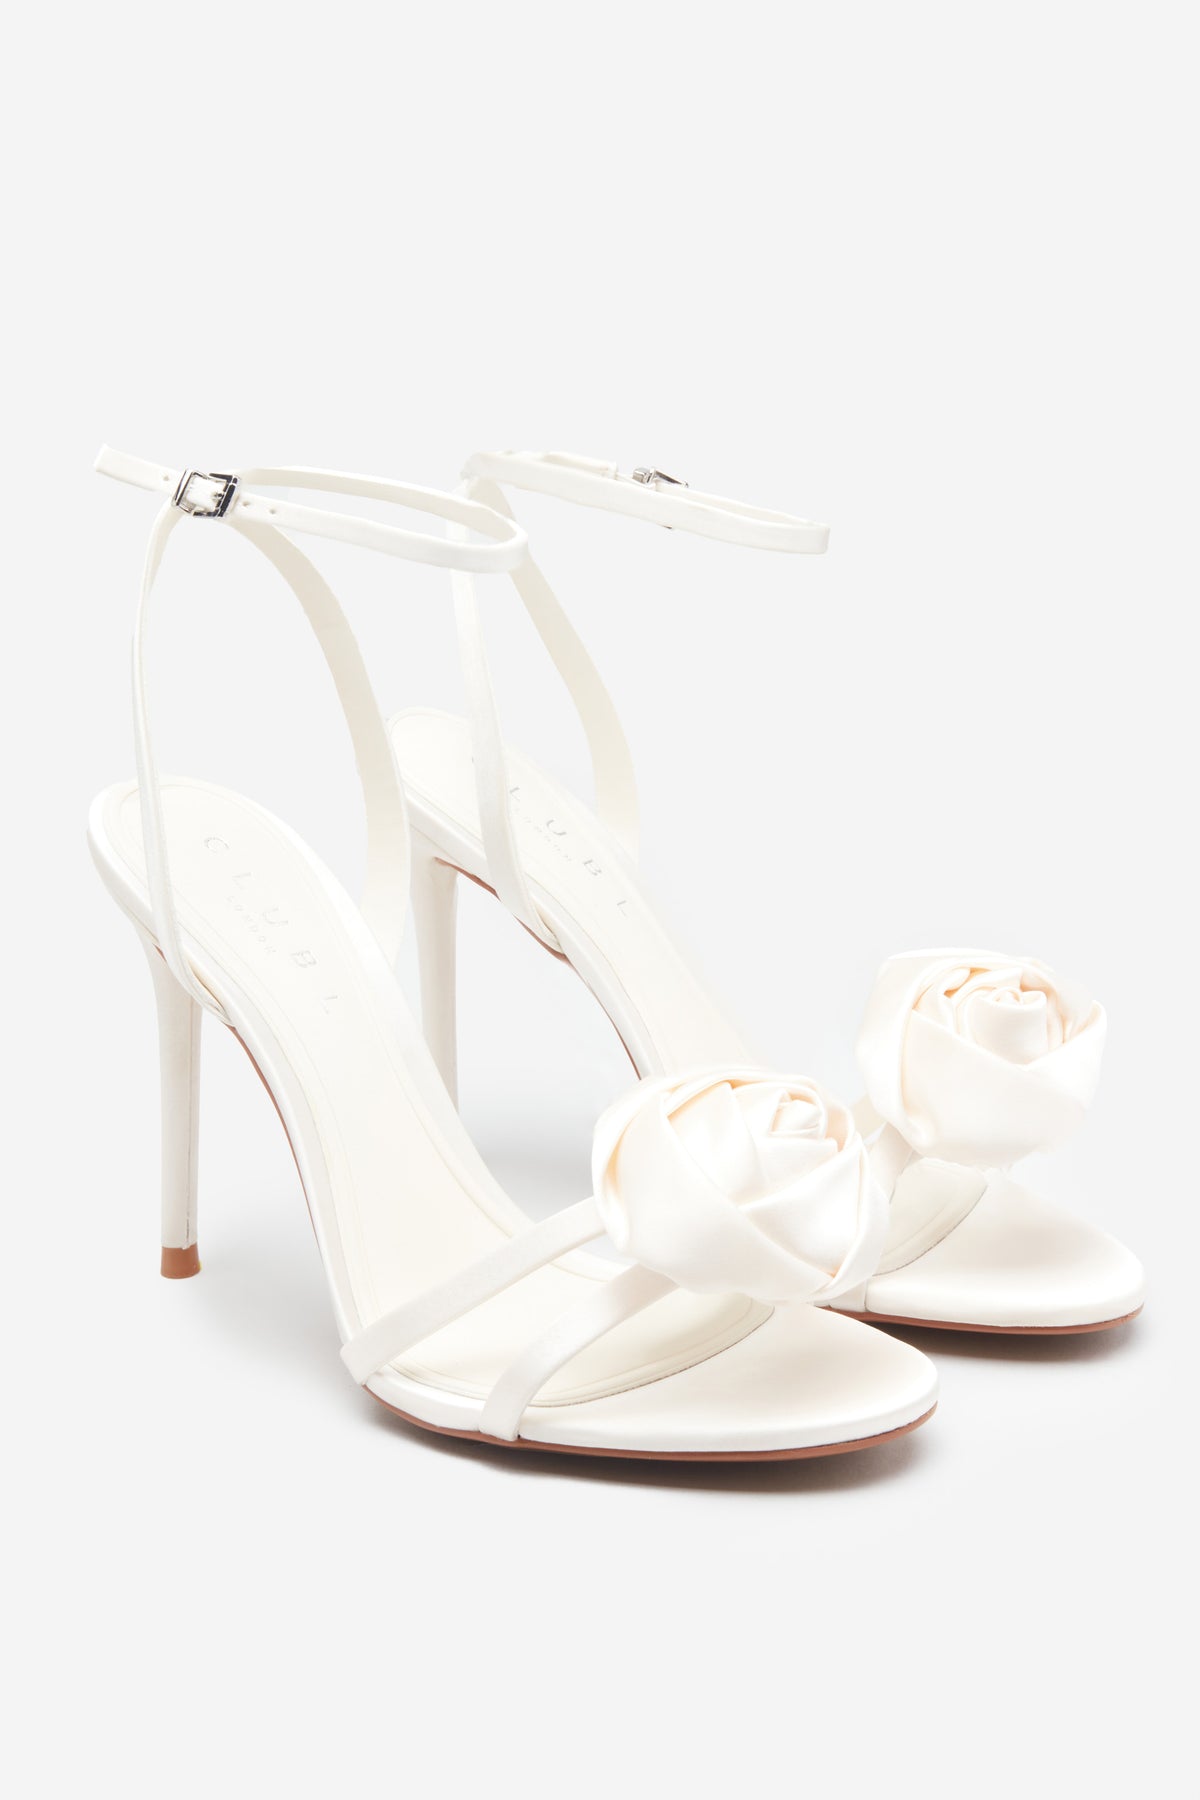 Tamaris High heeled sandals - ivory/off-white - Zalando.de